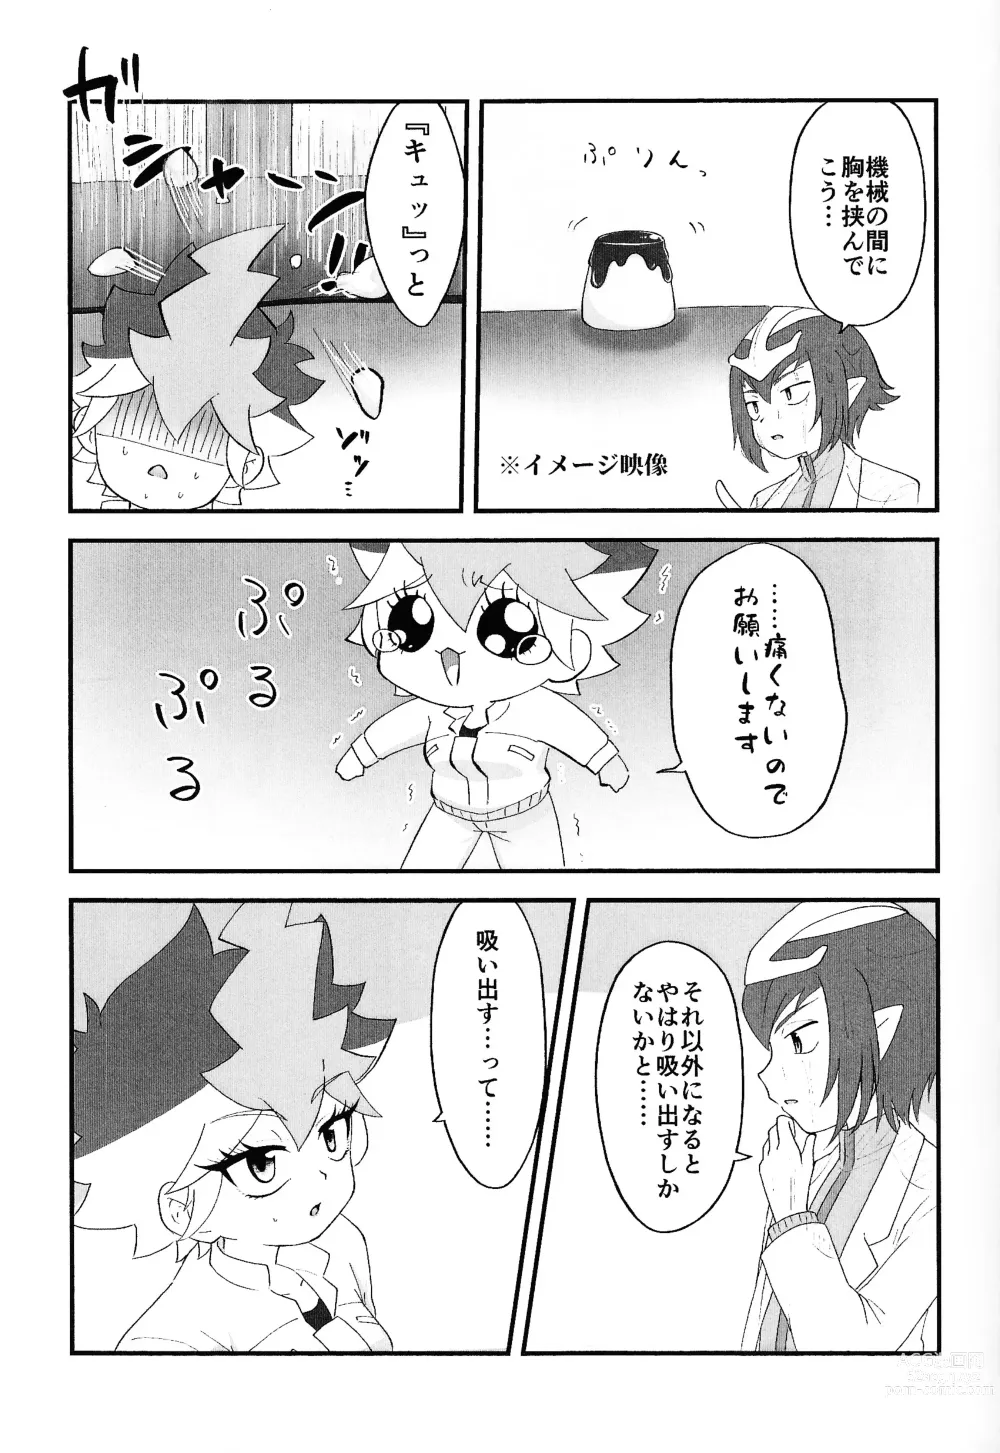 Page 10 of doujinshi Pandoranohako ka kindan no kajitsu ka